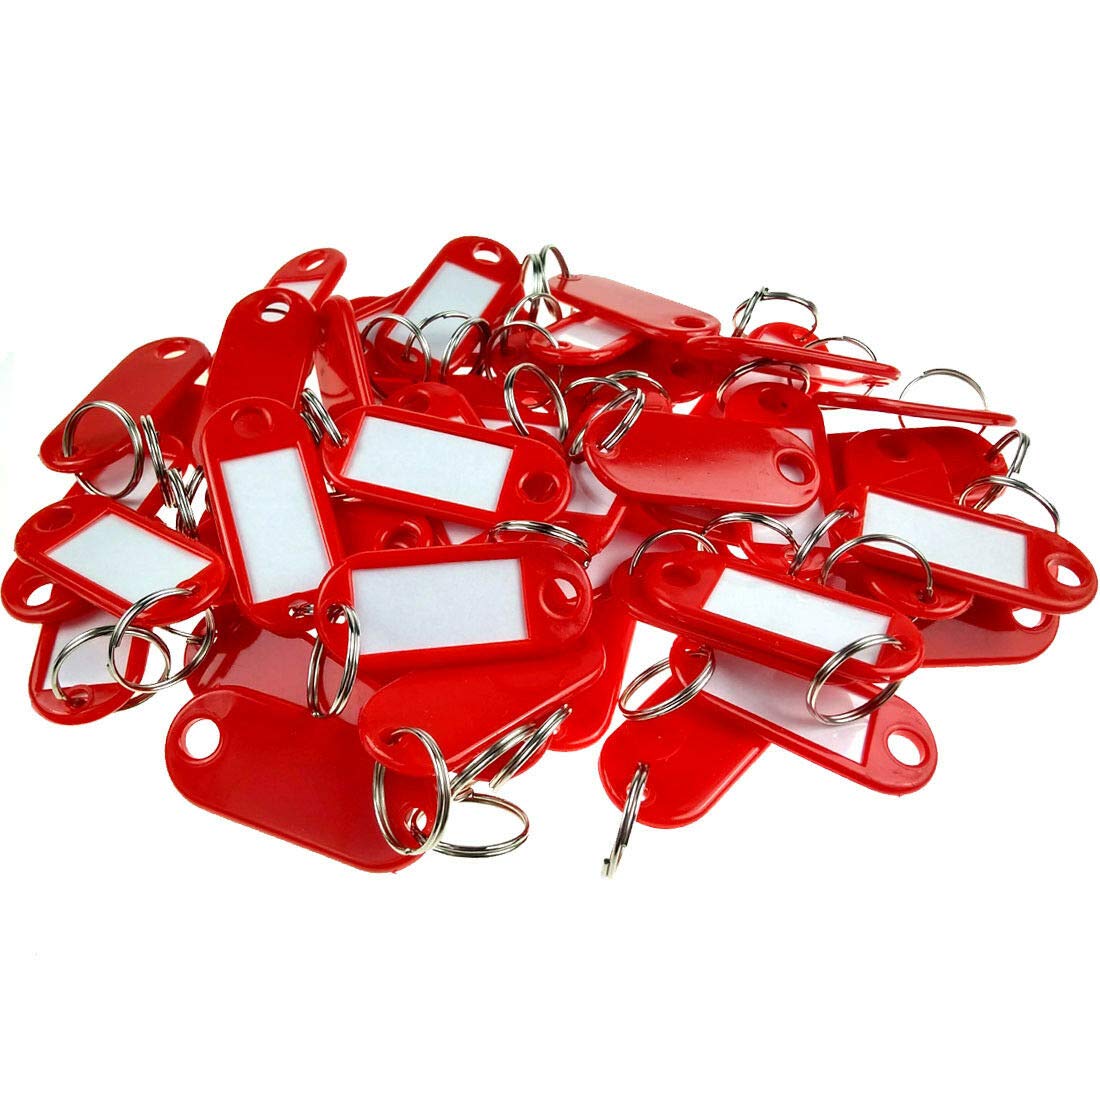 Wisplast 200 Stück Schlüsselschilder Schlüsselanhänger zum Beschriften in Rot